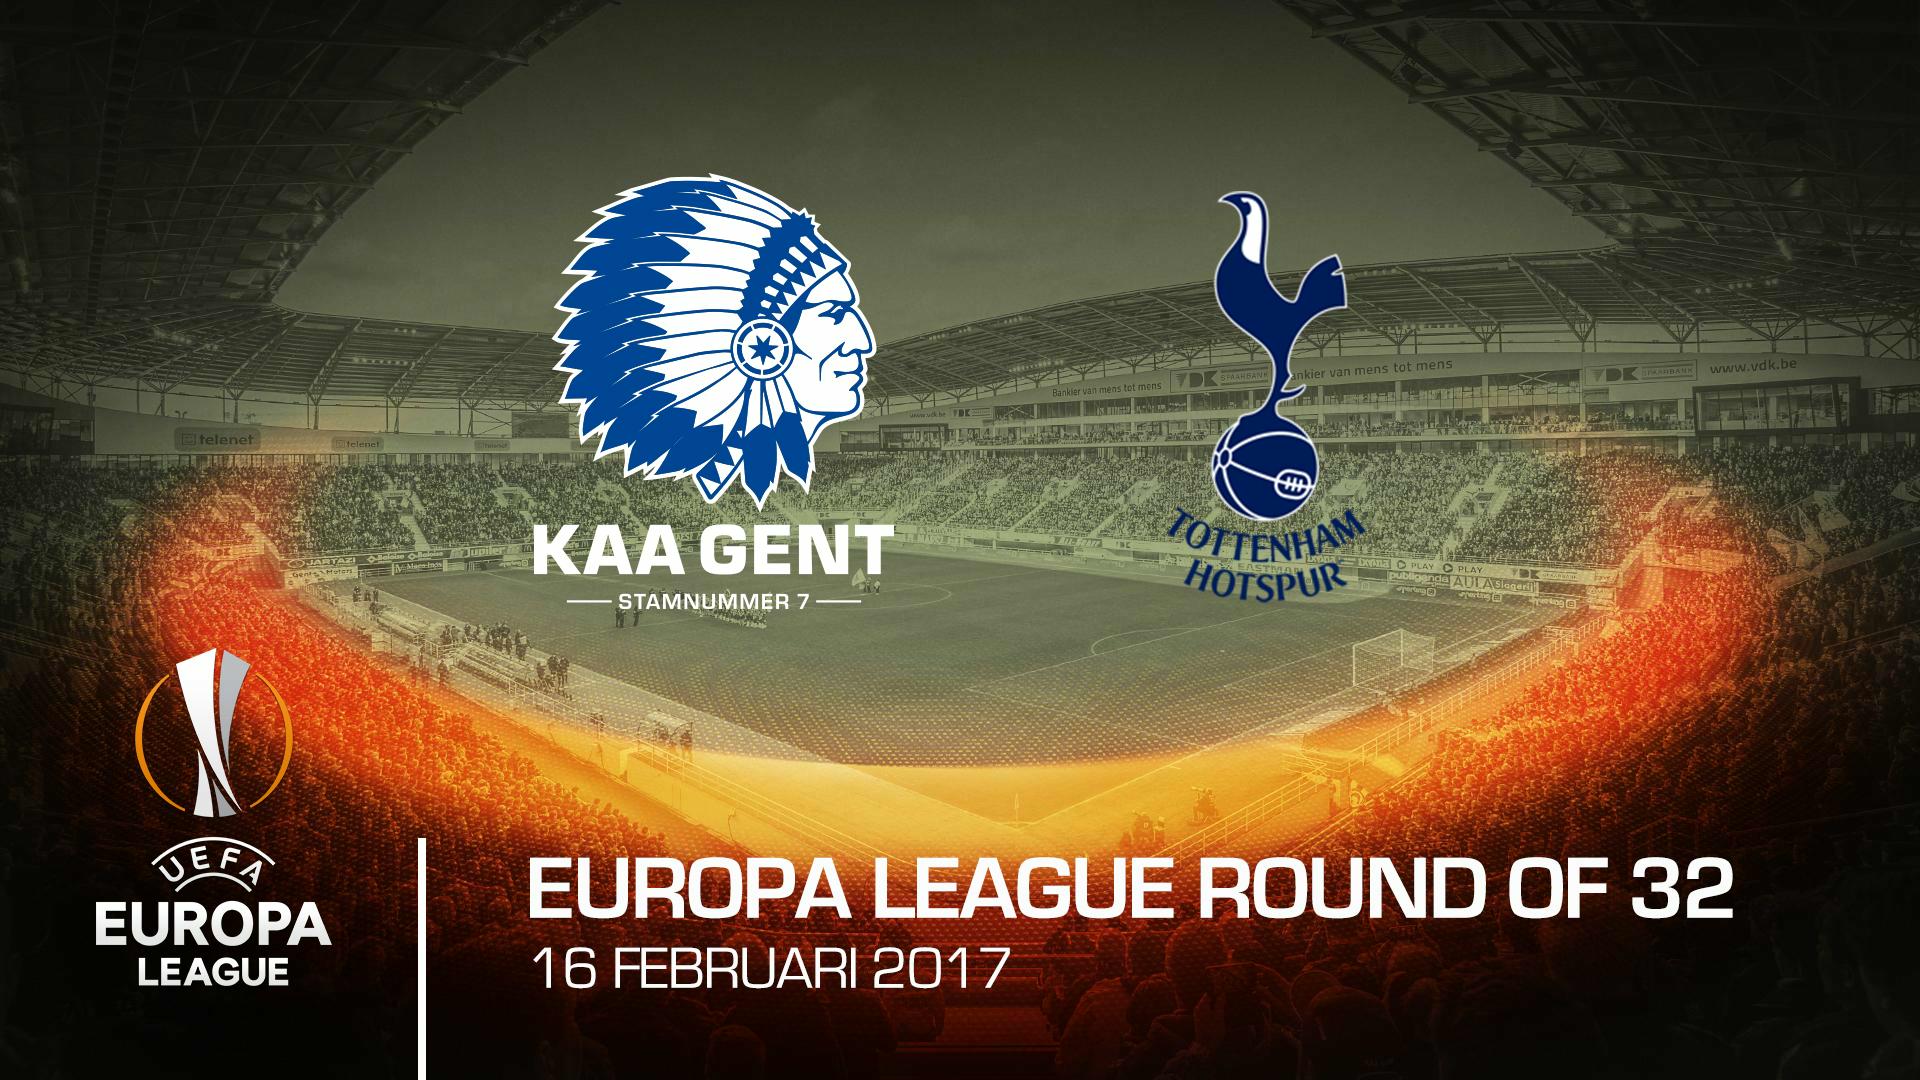 Start vrije verkoop KAA Gent - Tottenham op 25/01